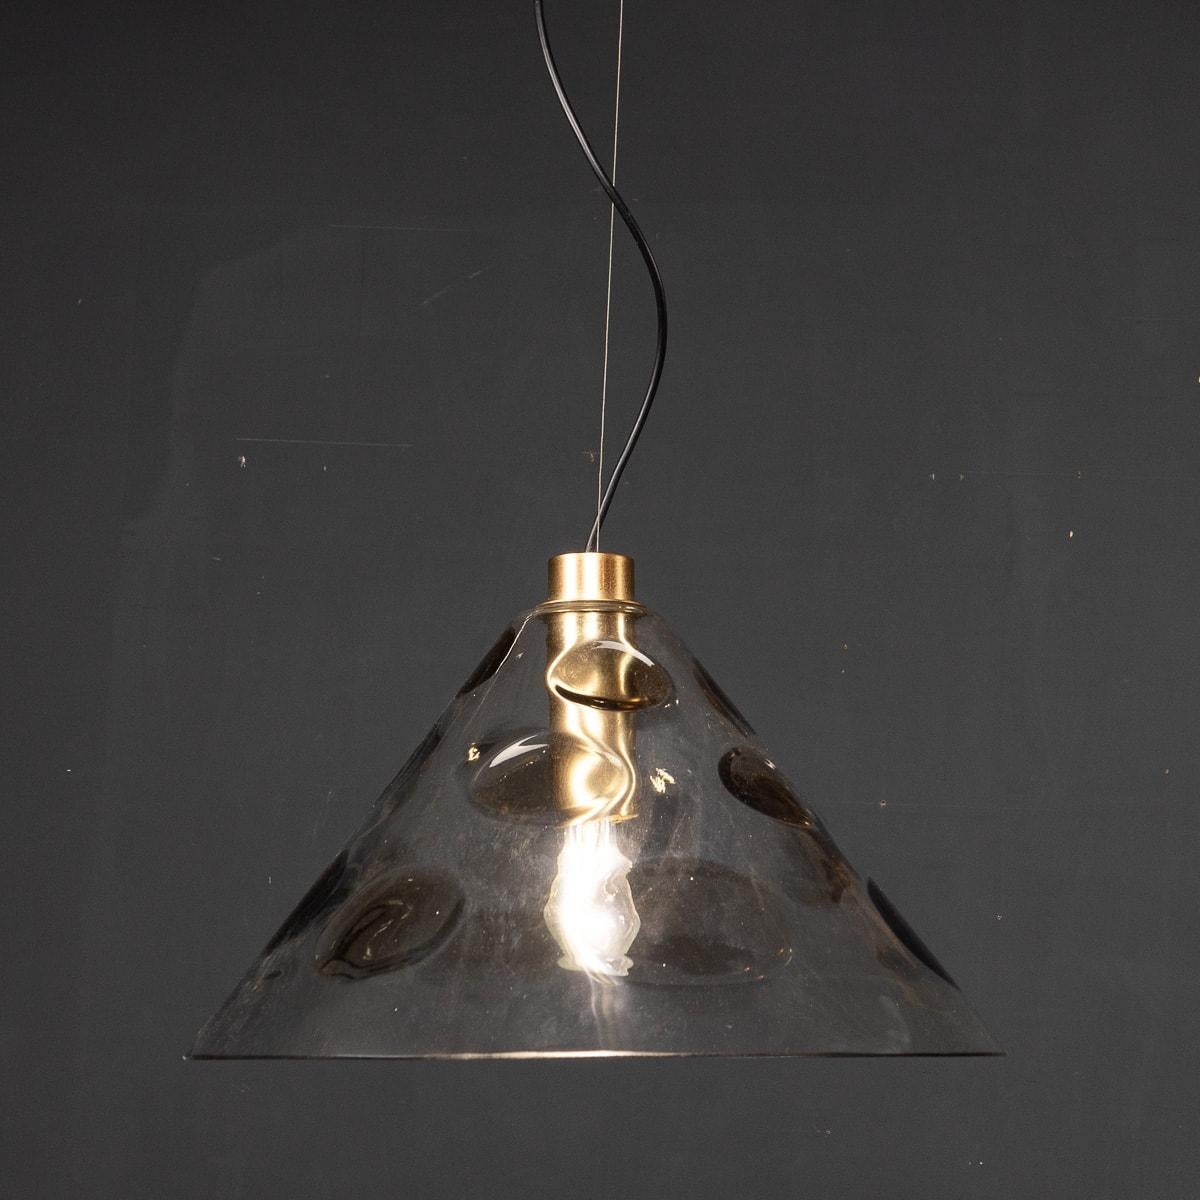 Lampe suspendue en verre Murano à pois, avec accessoires en laiton, datant du milieu du 20e siècle. Cette lampe a été créée dans les années 1970.

CONDITION
En très bon état - usure due à l'âge.

TAILLE
Hauteur : 32cm
Diamètre : 40 cm